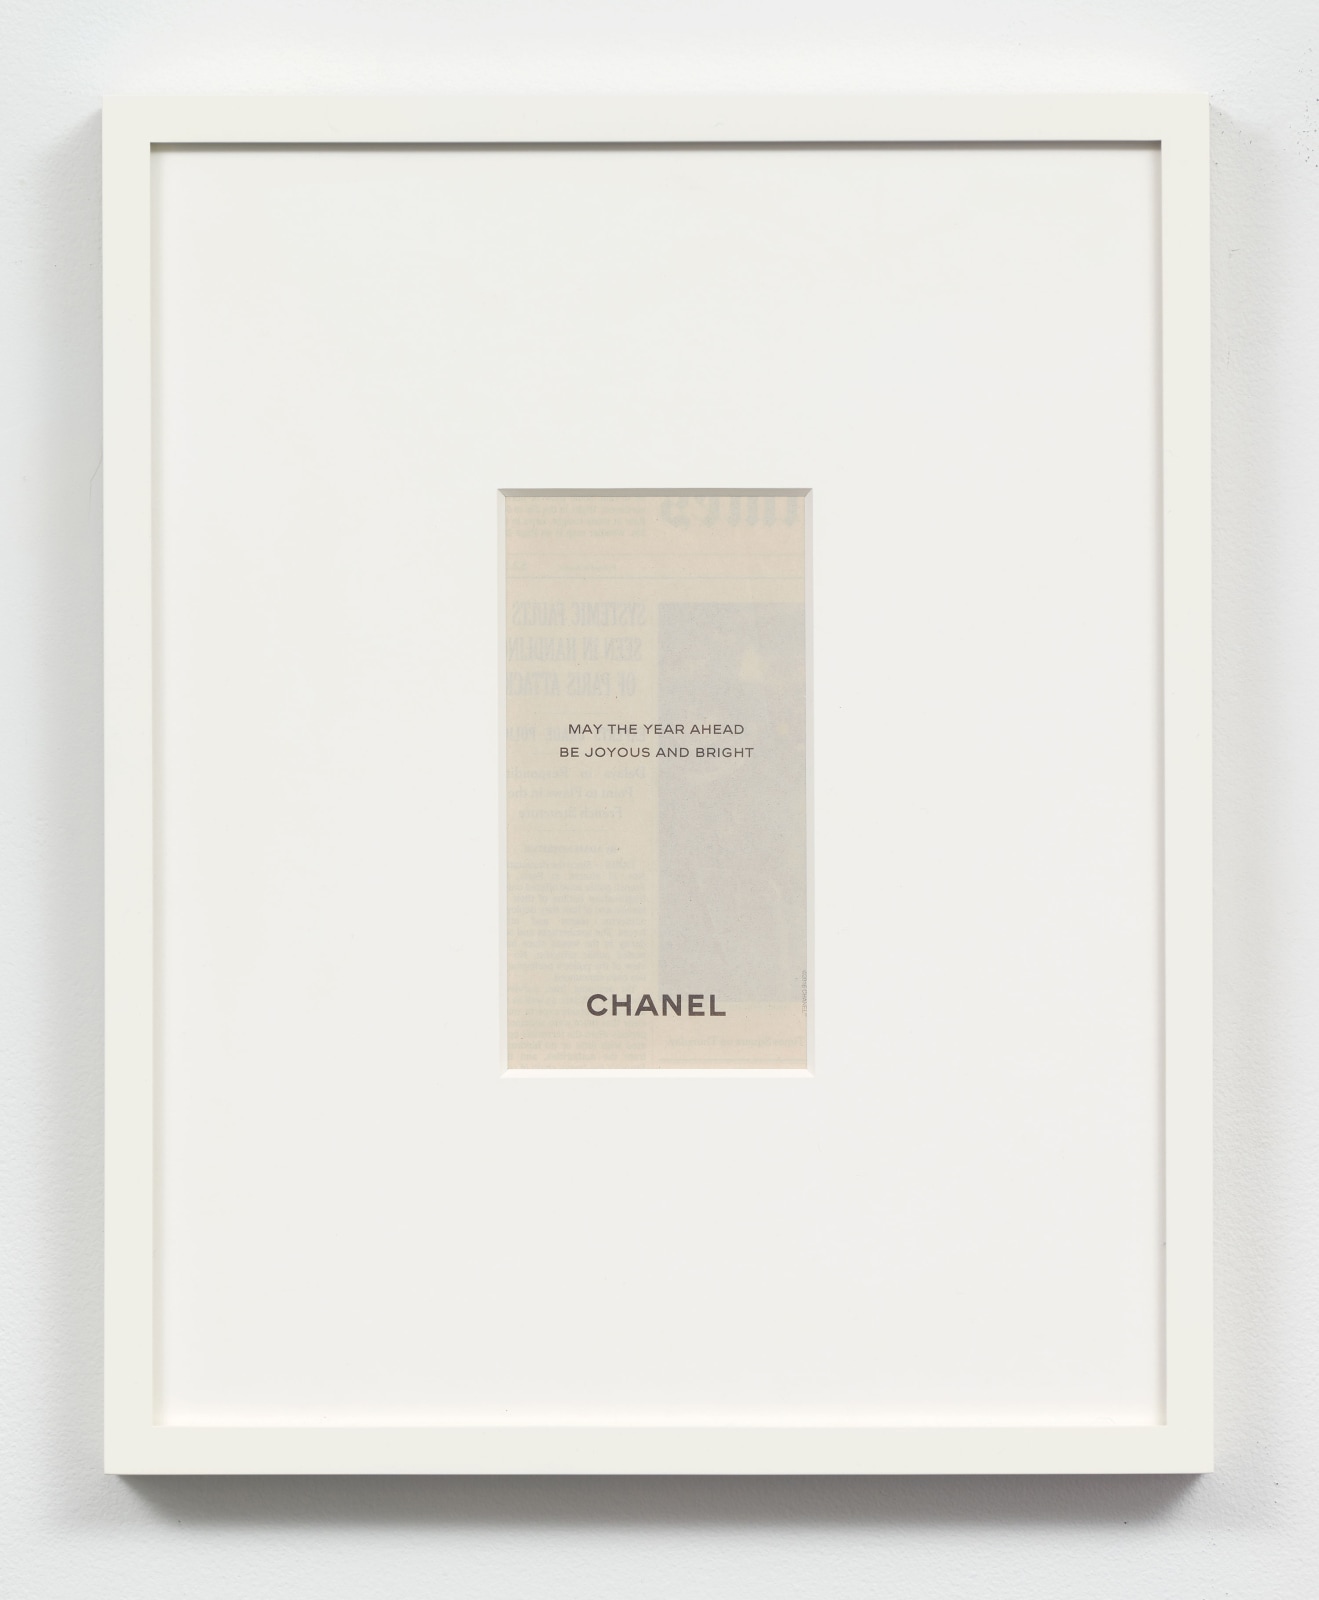 Chanel, 2020